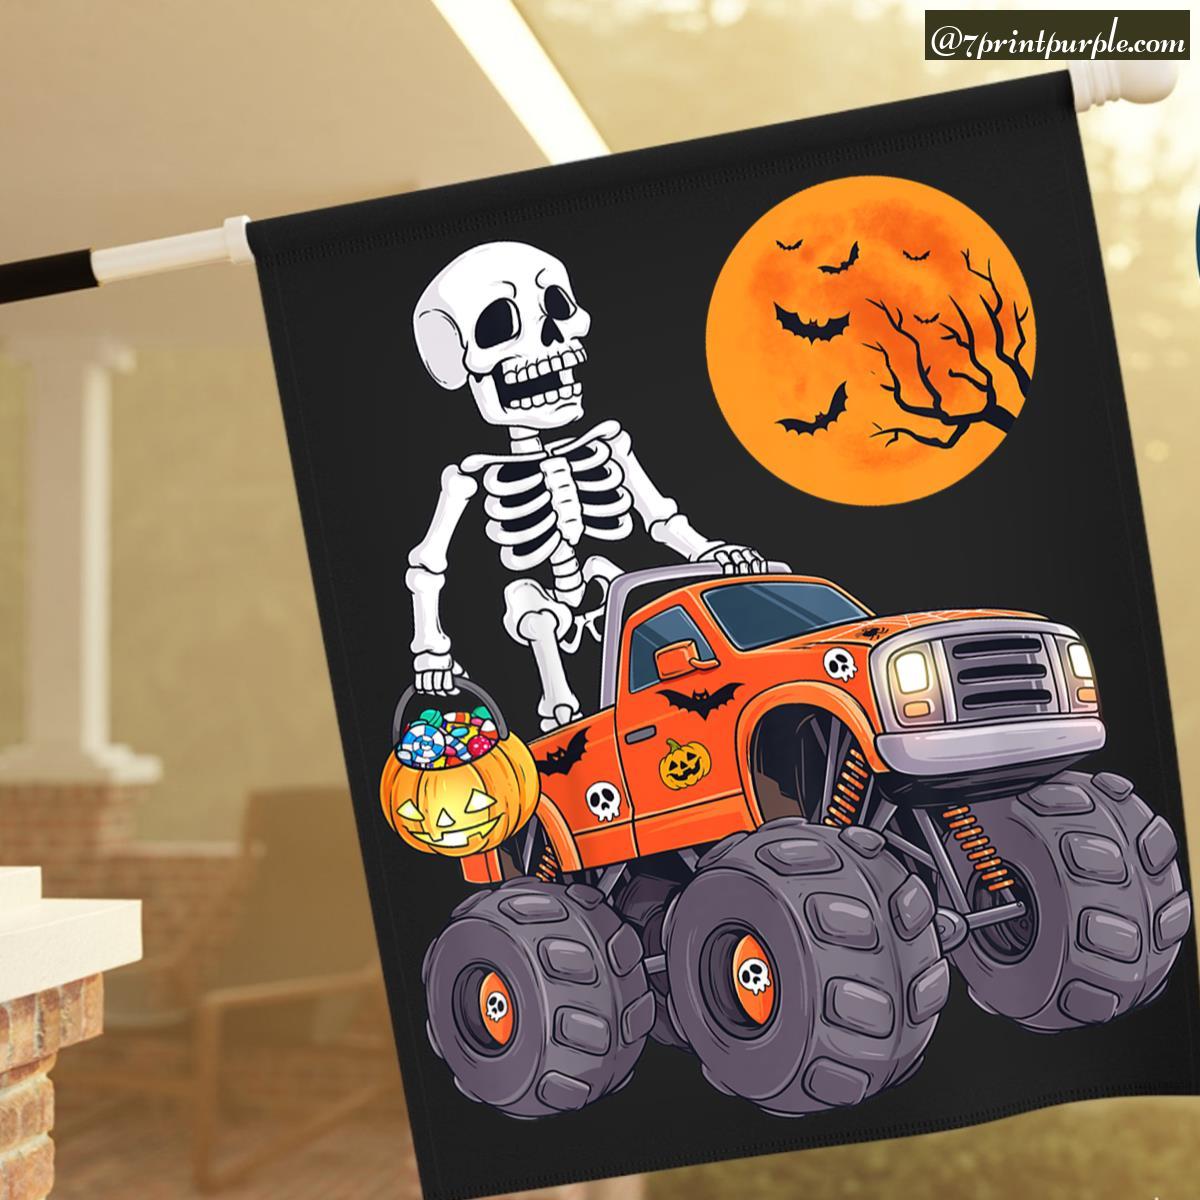 https://cdn.7printpurple.com/uploads/22091/Kids-Halloween-Skeleton-Riding-Monster-Truck-Funny-Toddler-Boys-2.jpg